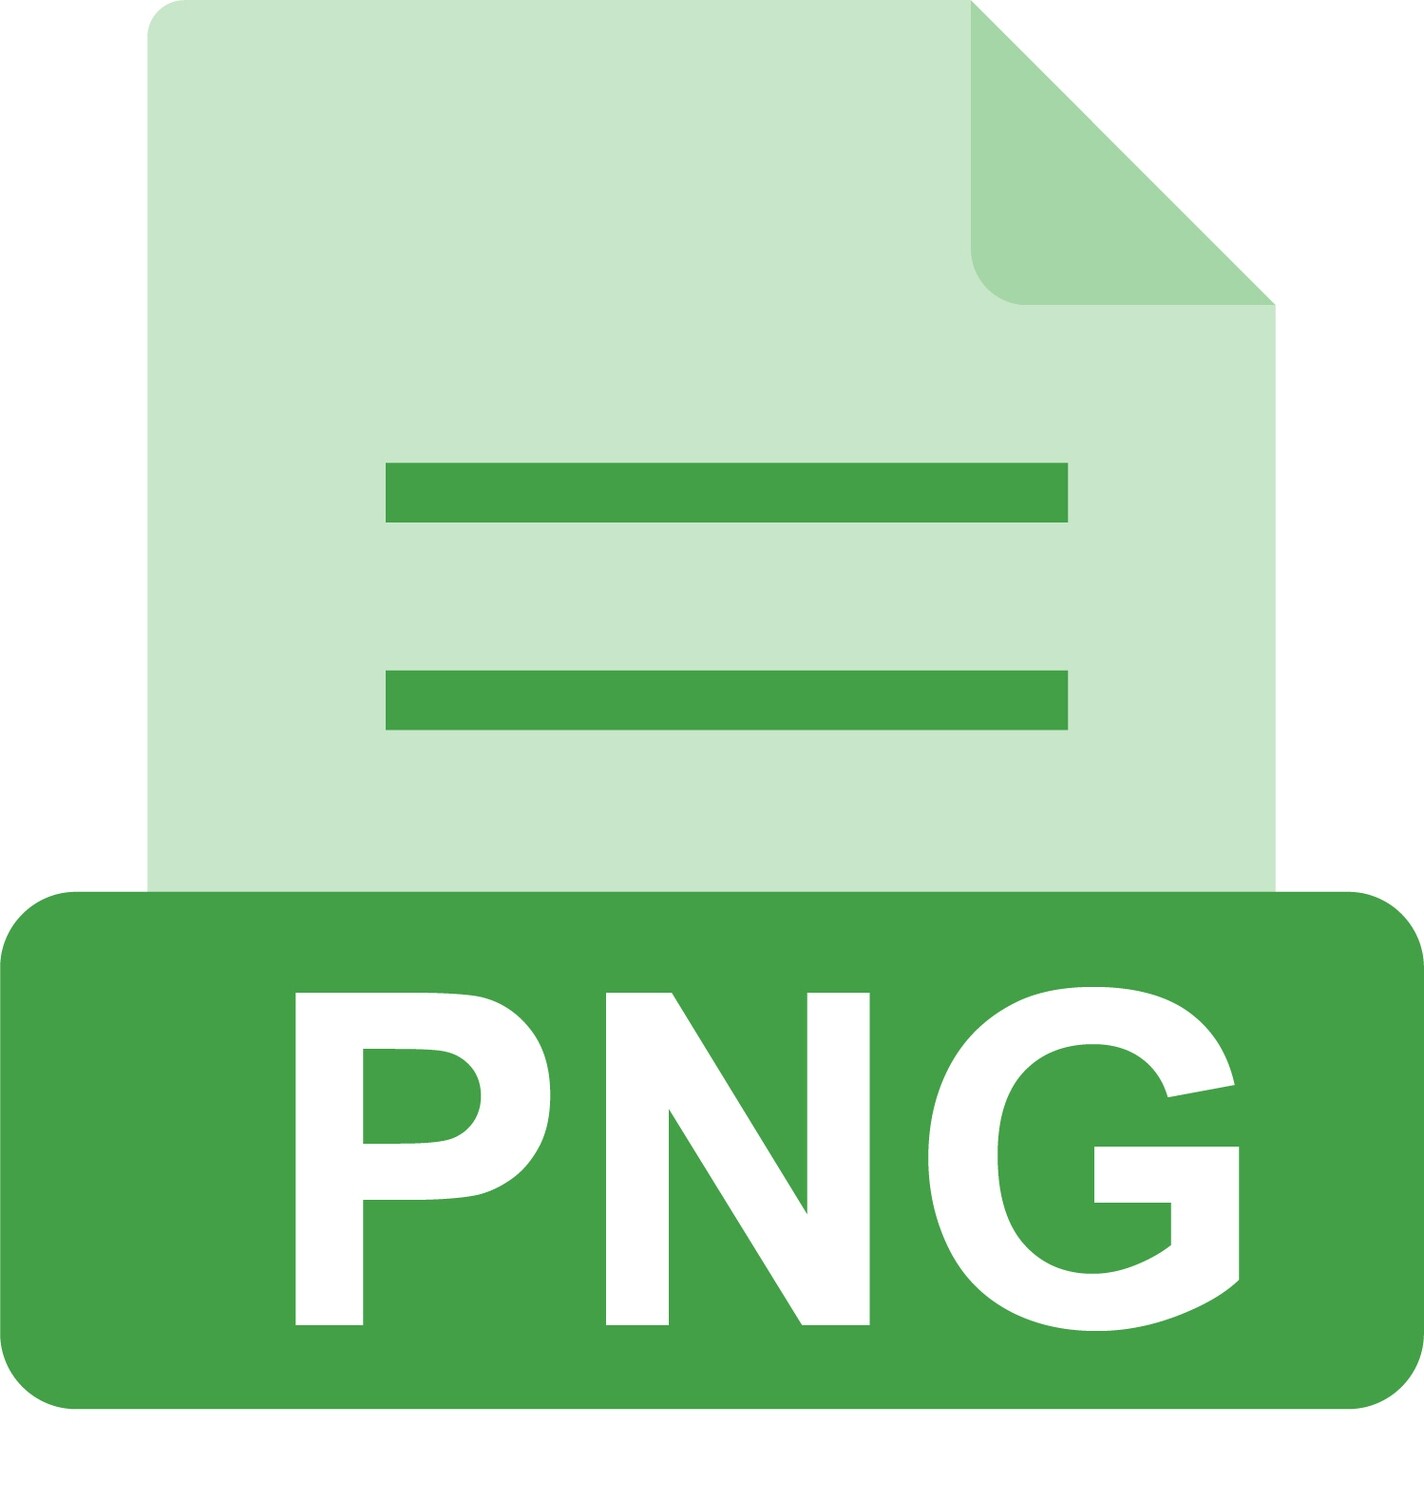 E-File: PNG, PE Alaska